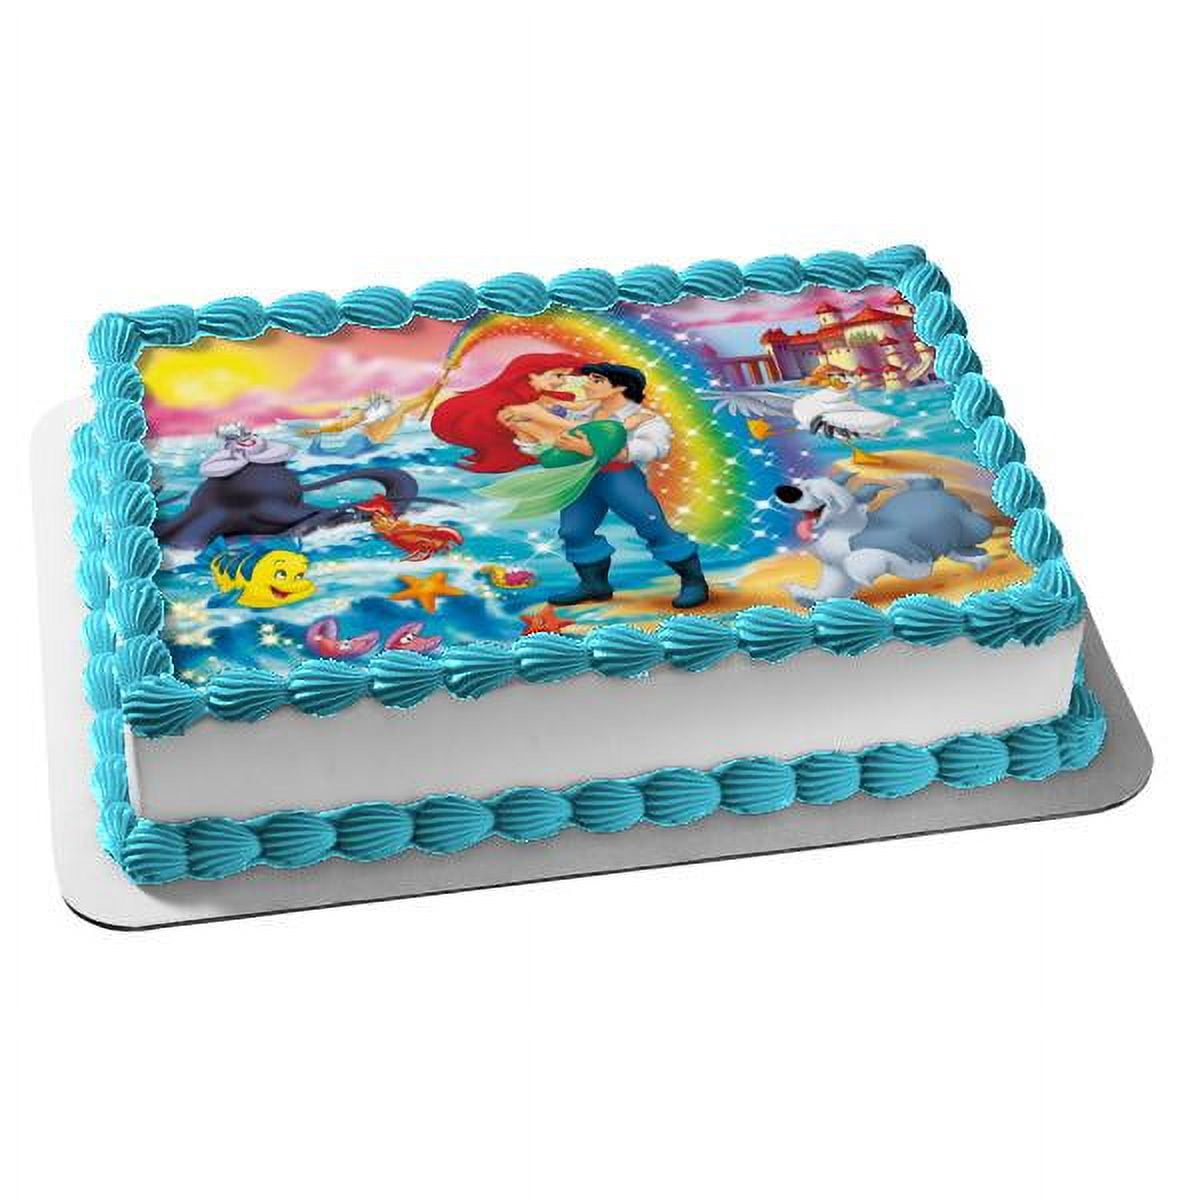 Ariel 2 (Little Mermaid) Cake Topper | eBay